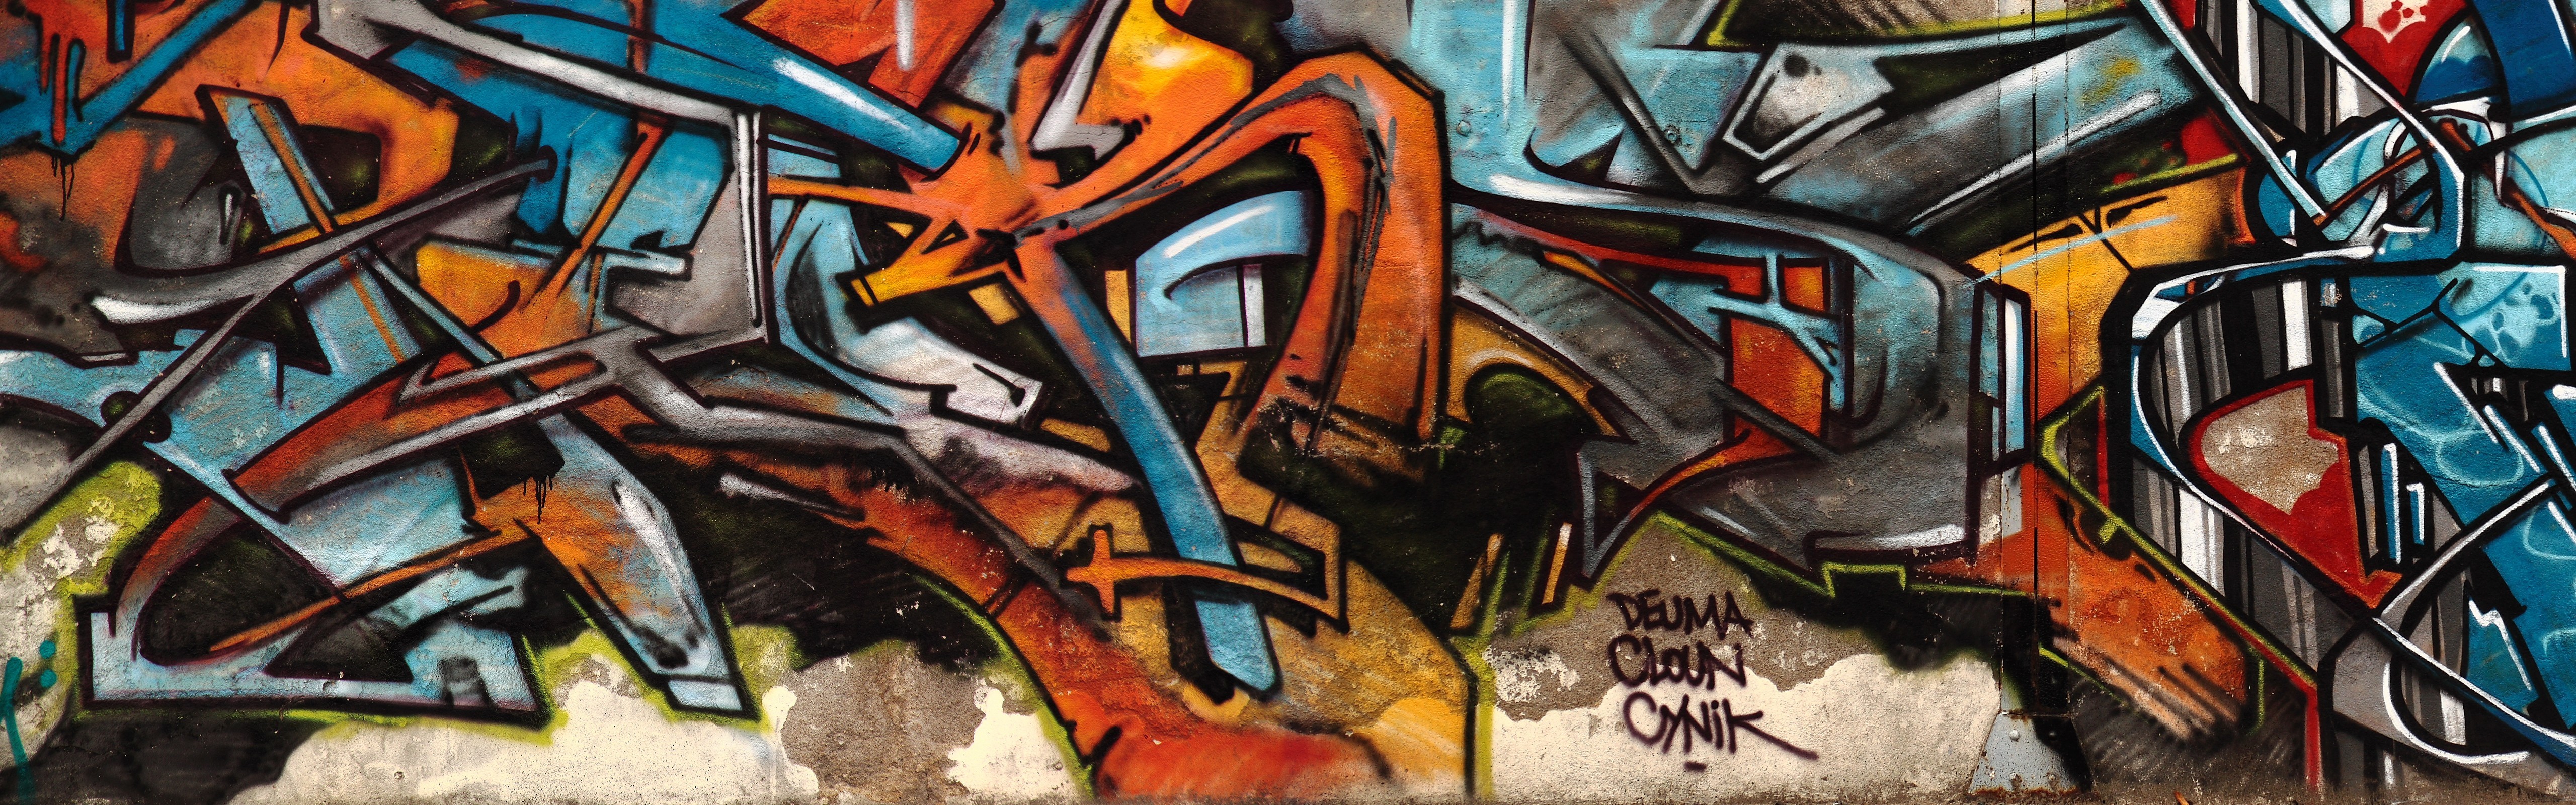 General 5120x1600 graffiti wall urban